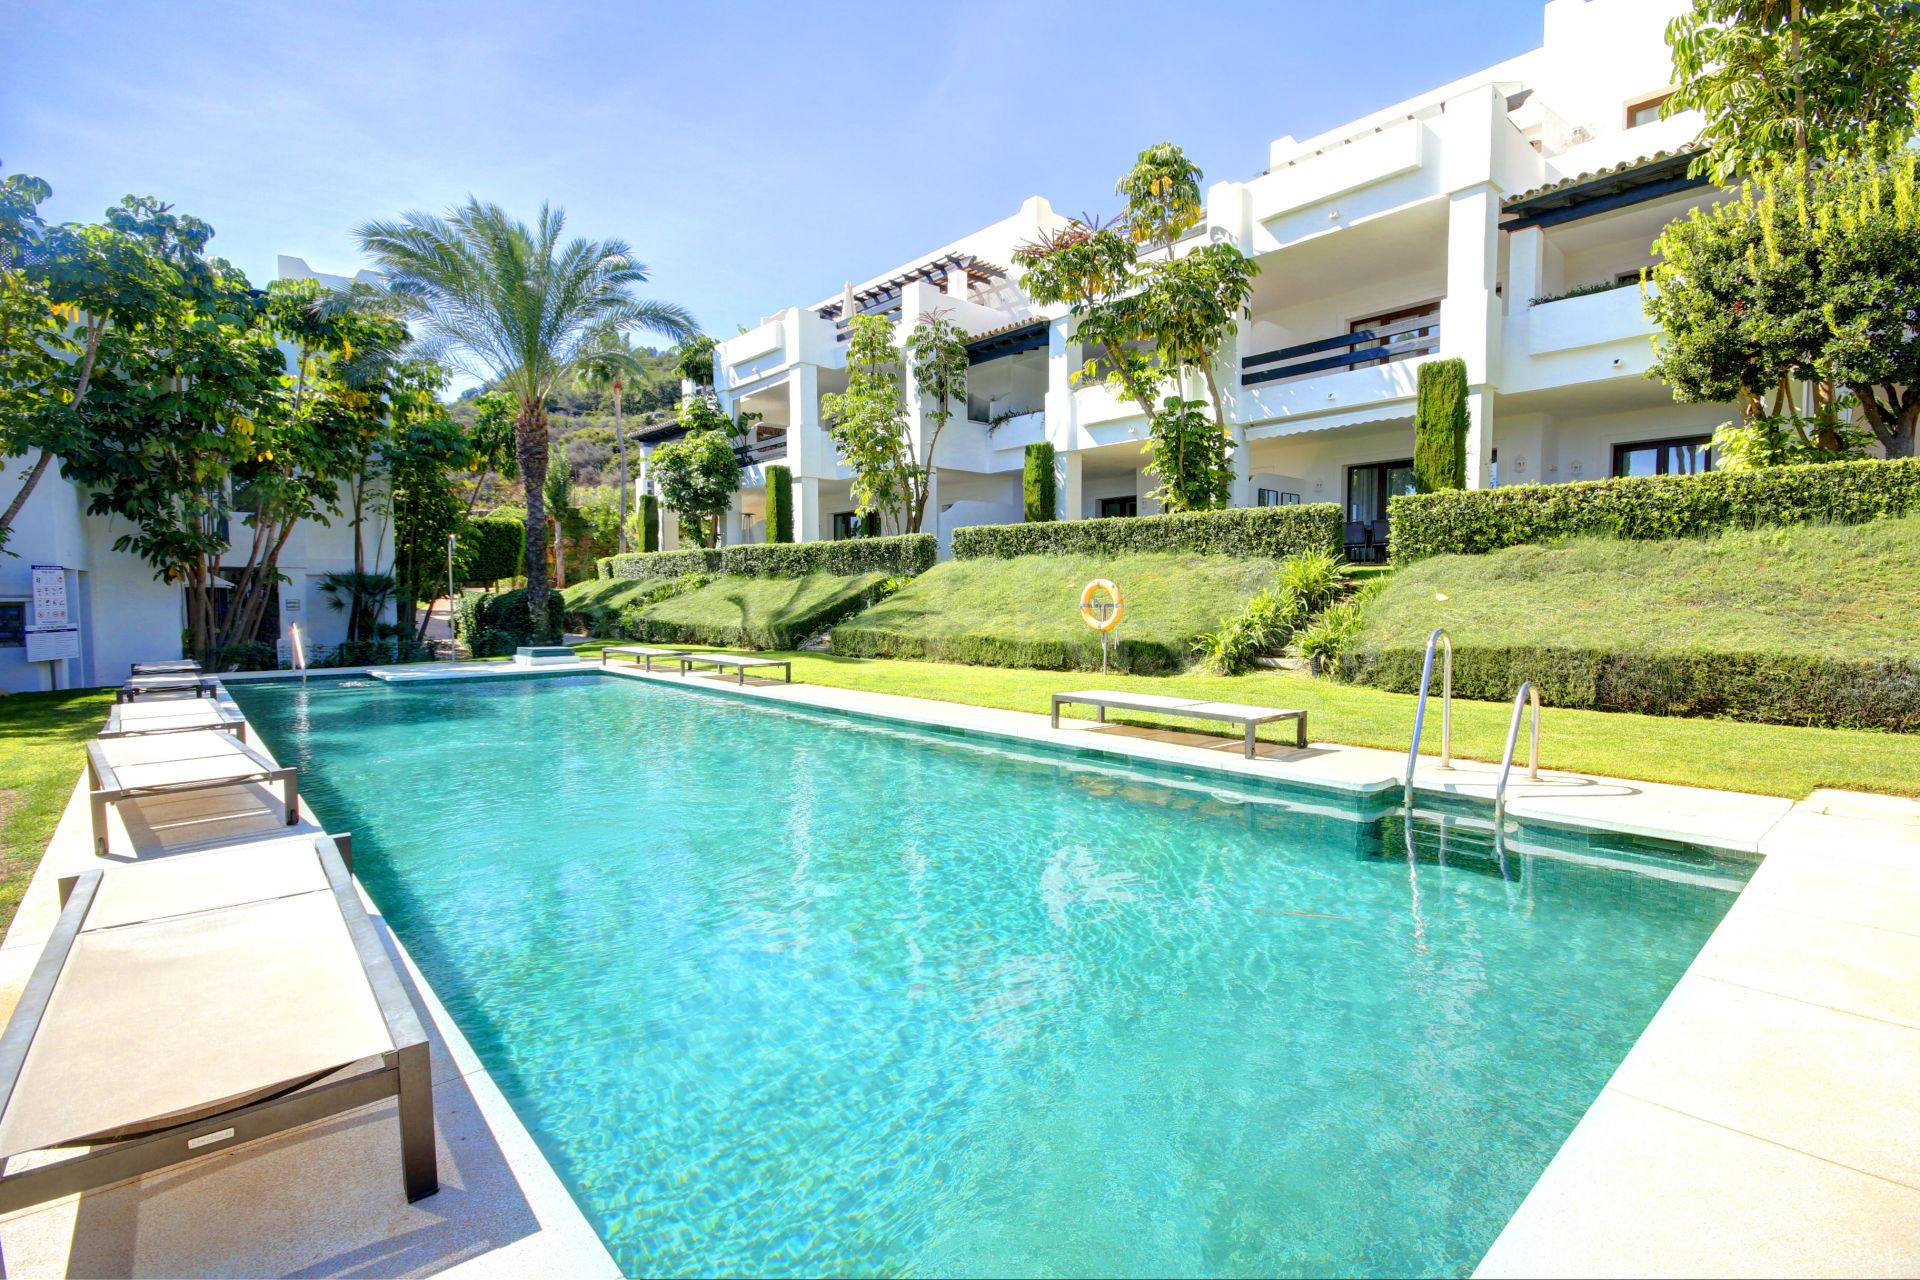 Fabulous 2 bedroom garden apartment for sale in Finca Cortesin Golf Resort, Casares,